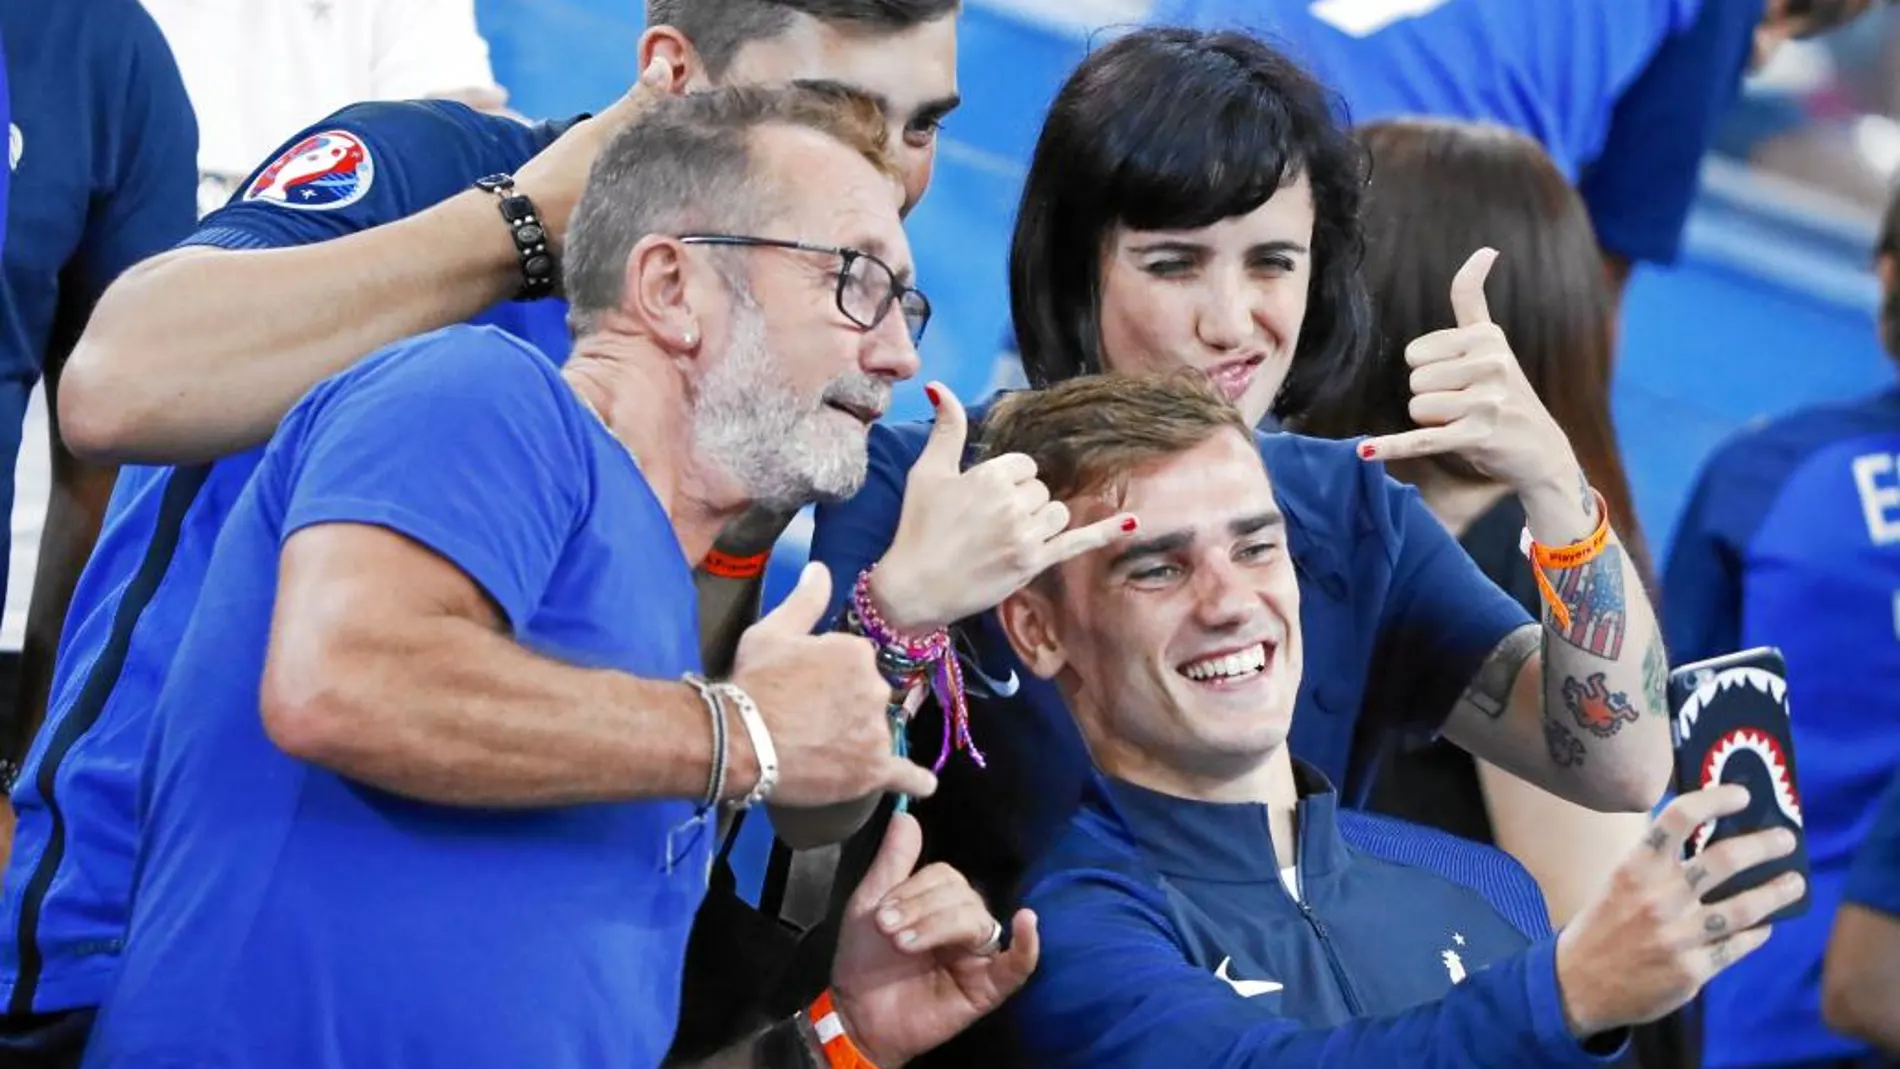 Todos los franceses quieren ser hoy como Griezmann. El jugador del Atlético se ha convertido en el ídolo de un país. En la imagen, se hace un selfie con unos aficionados